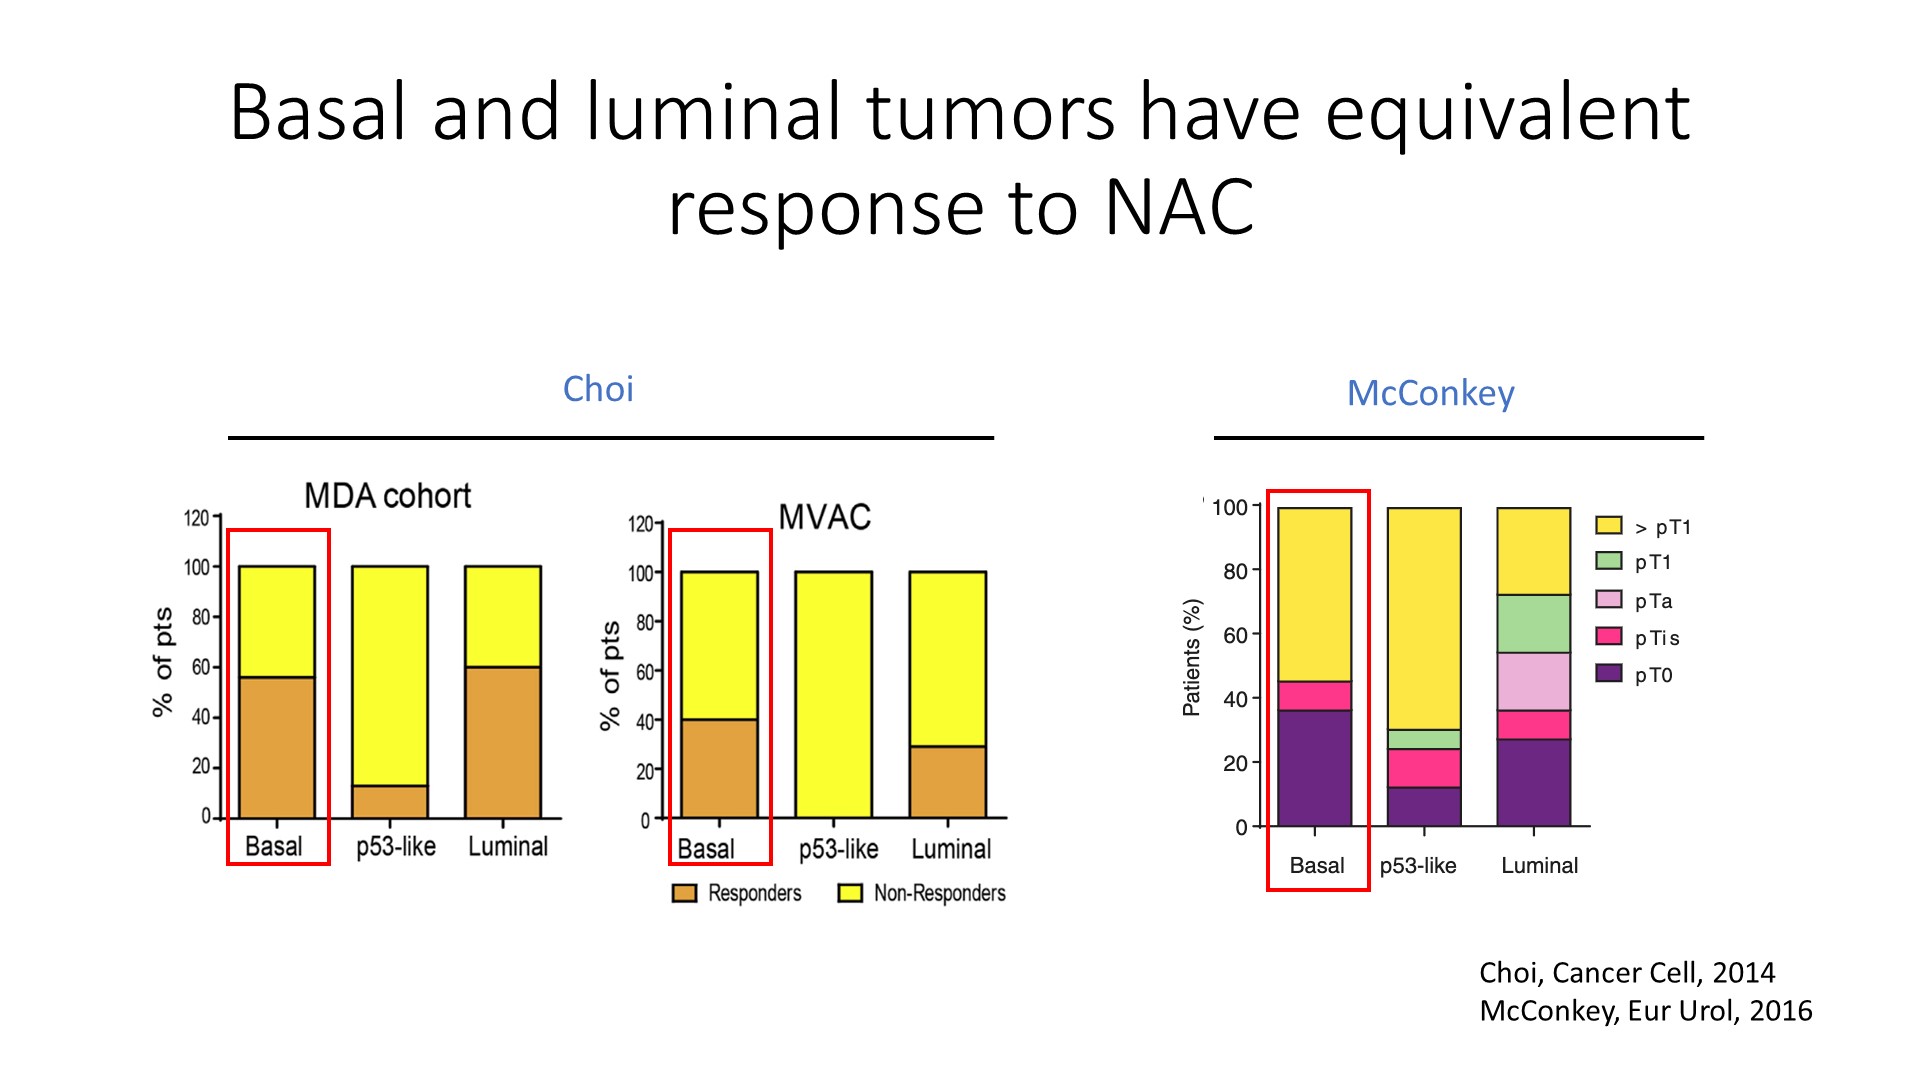 basal luminal tumors have equivalent response to NAC